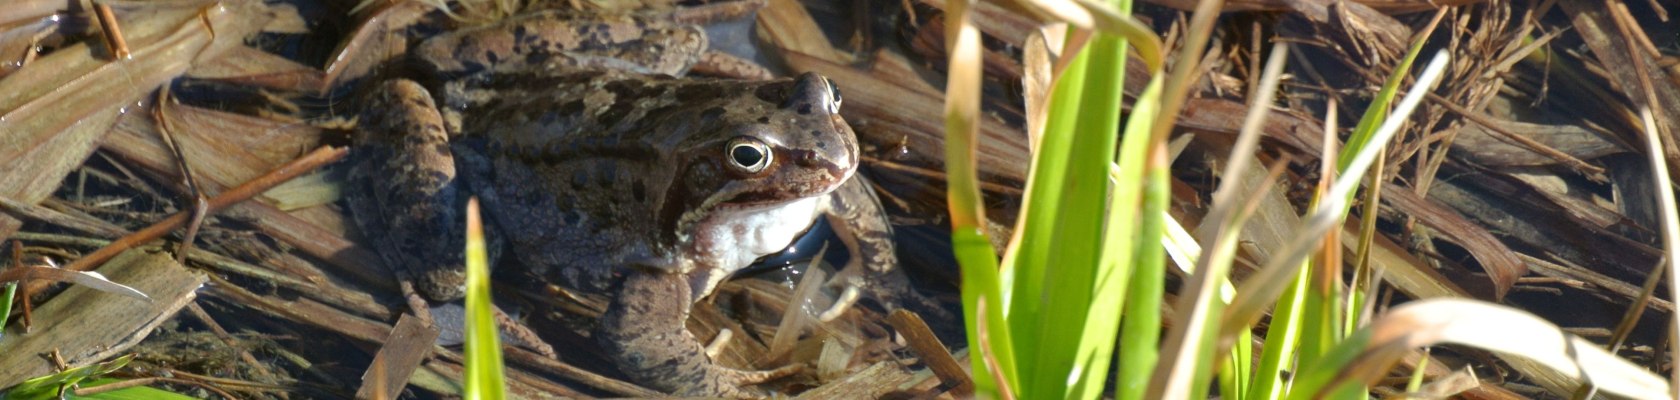 Frosch im Biotop, Key Visual, © Naturpark Ötscher-Tormäuer